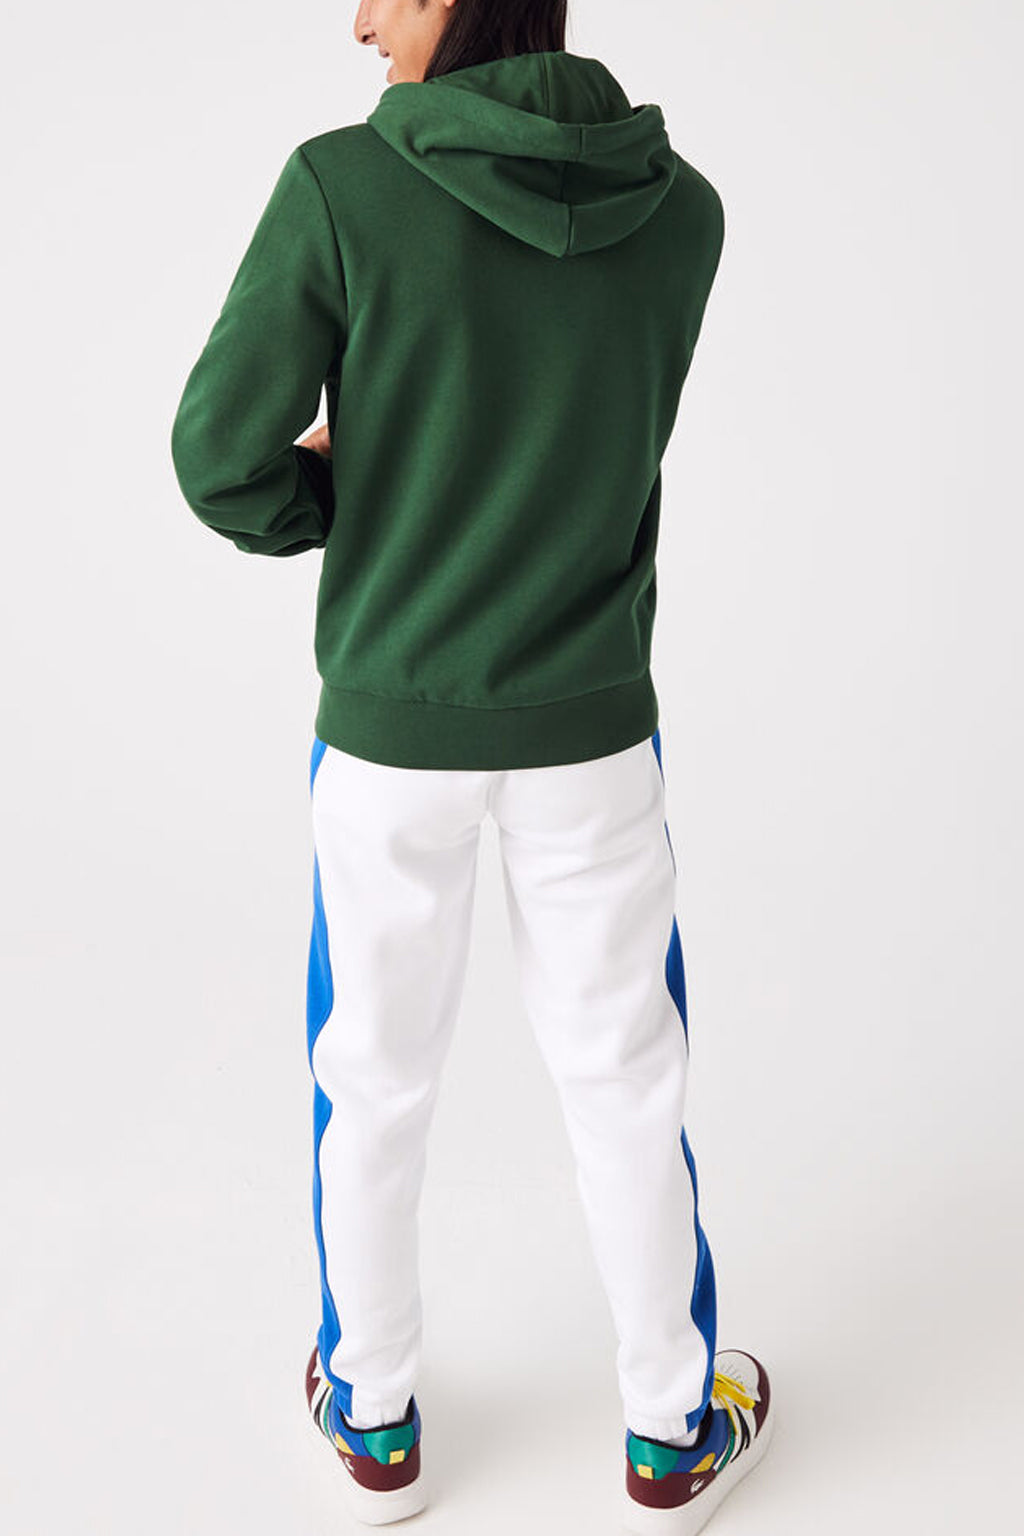 Lacoste - Kangaroo Pocket Fleece Sweatshirt